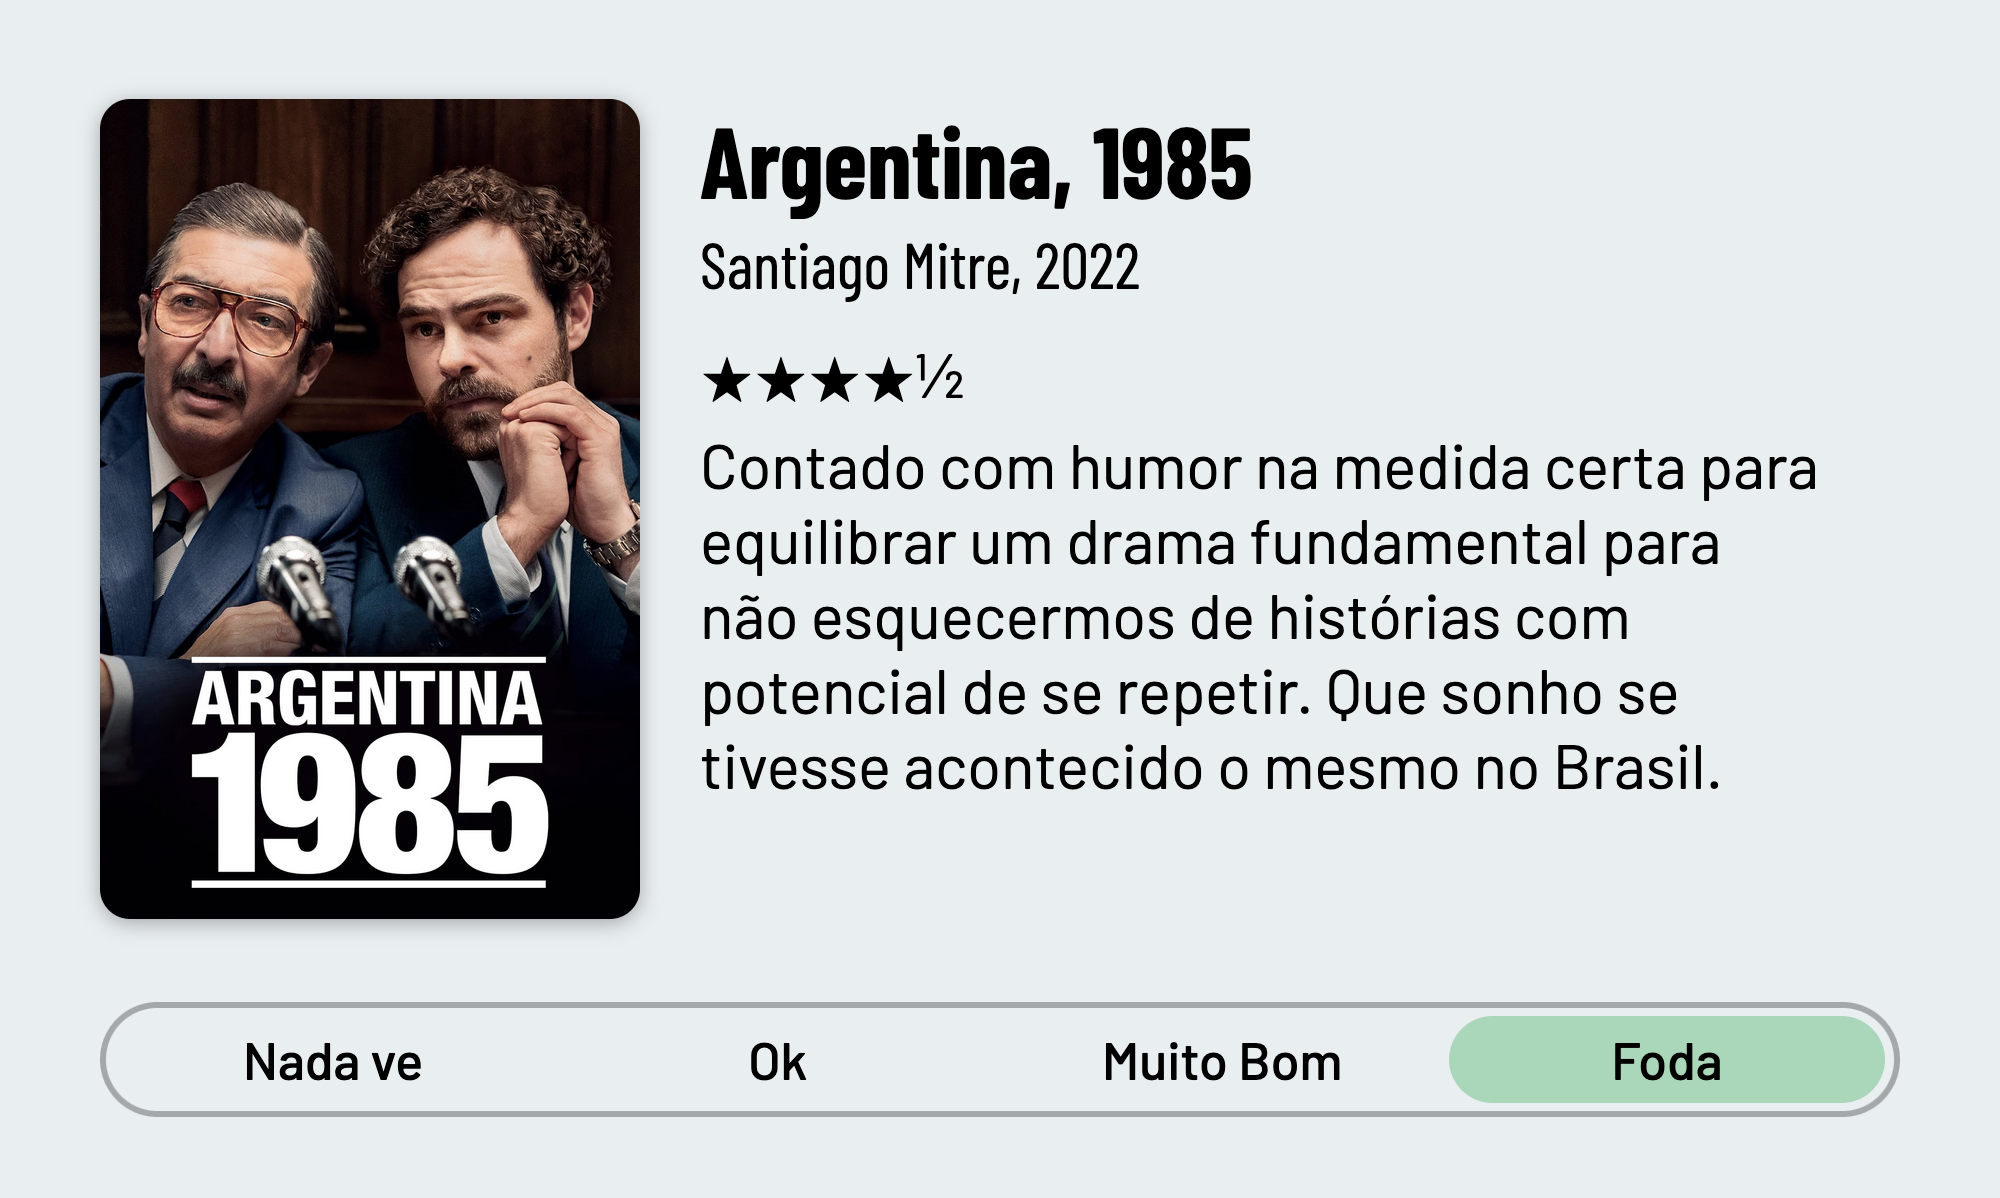 QuickReview do filme "Argentina, 1985" de Santiago Mitre com 4 estrelas e meia que diz: "Contado com humor na medida certa para equilibrar um drama fundamental para não esquecermos de histórias com potencial de se repetir. Que sonho se tivesse acontecido o mesmo no Brasil."